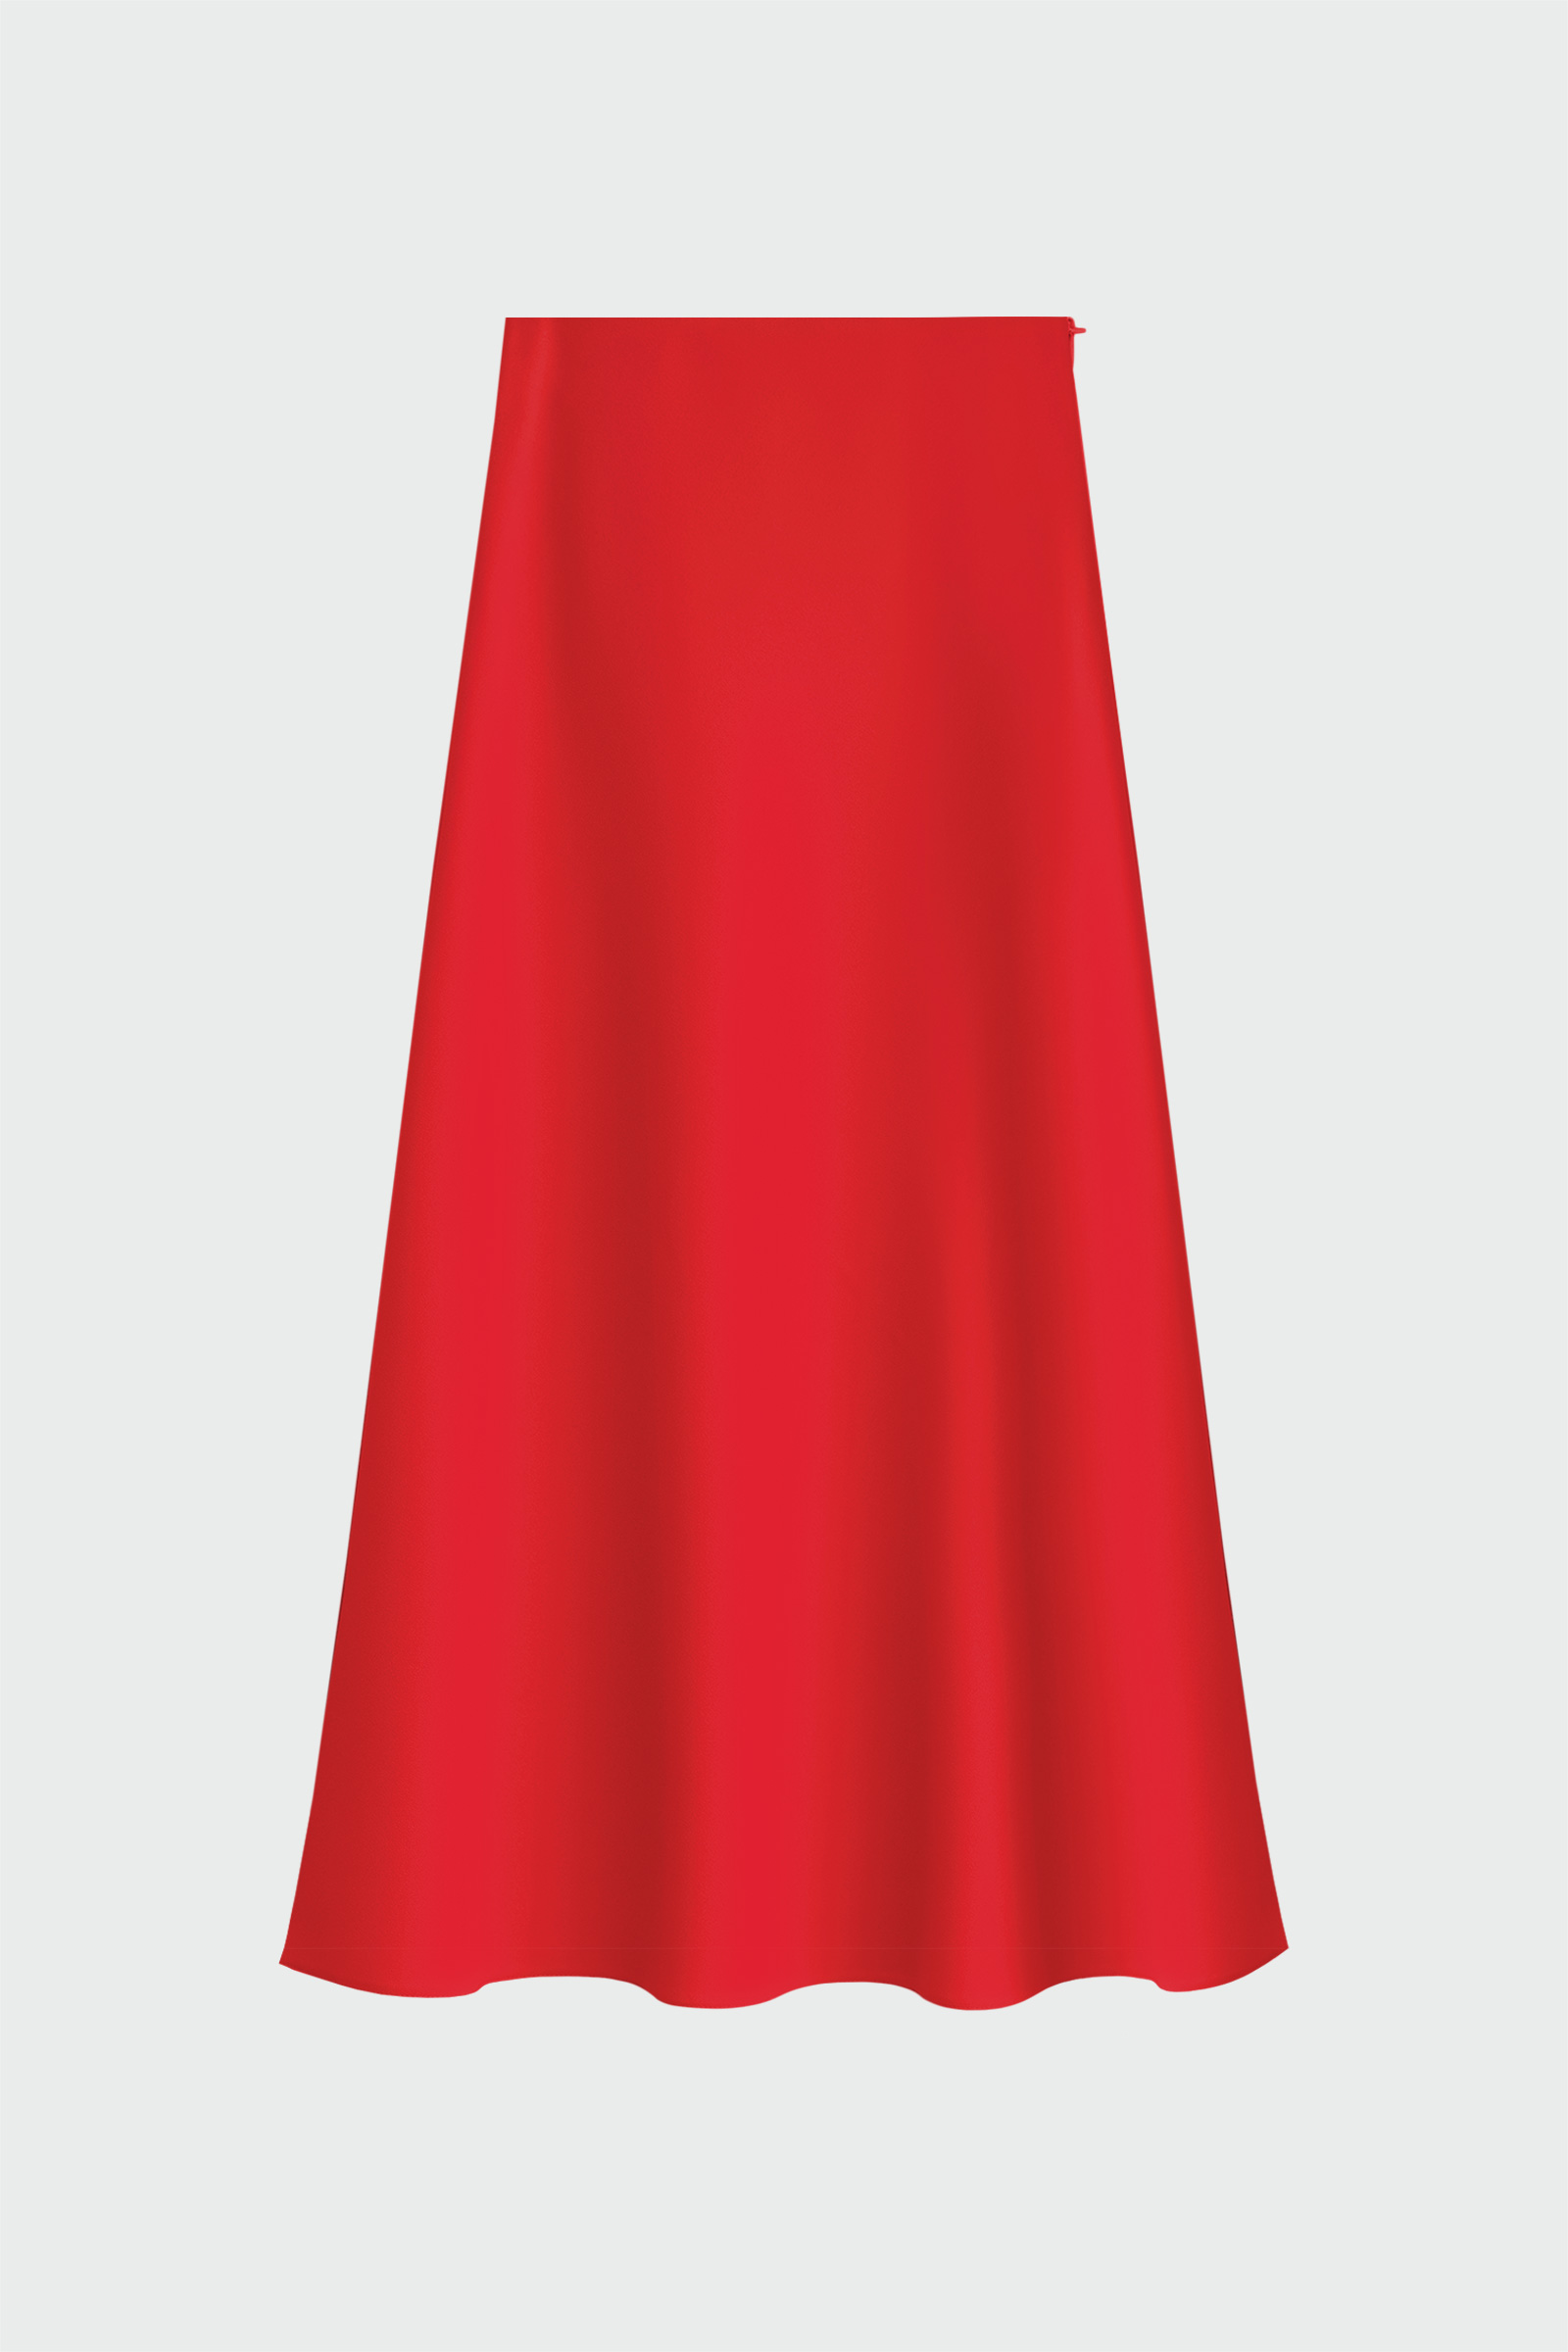 Uzun Fermuarlı Kırmızı Kadın Etek